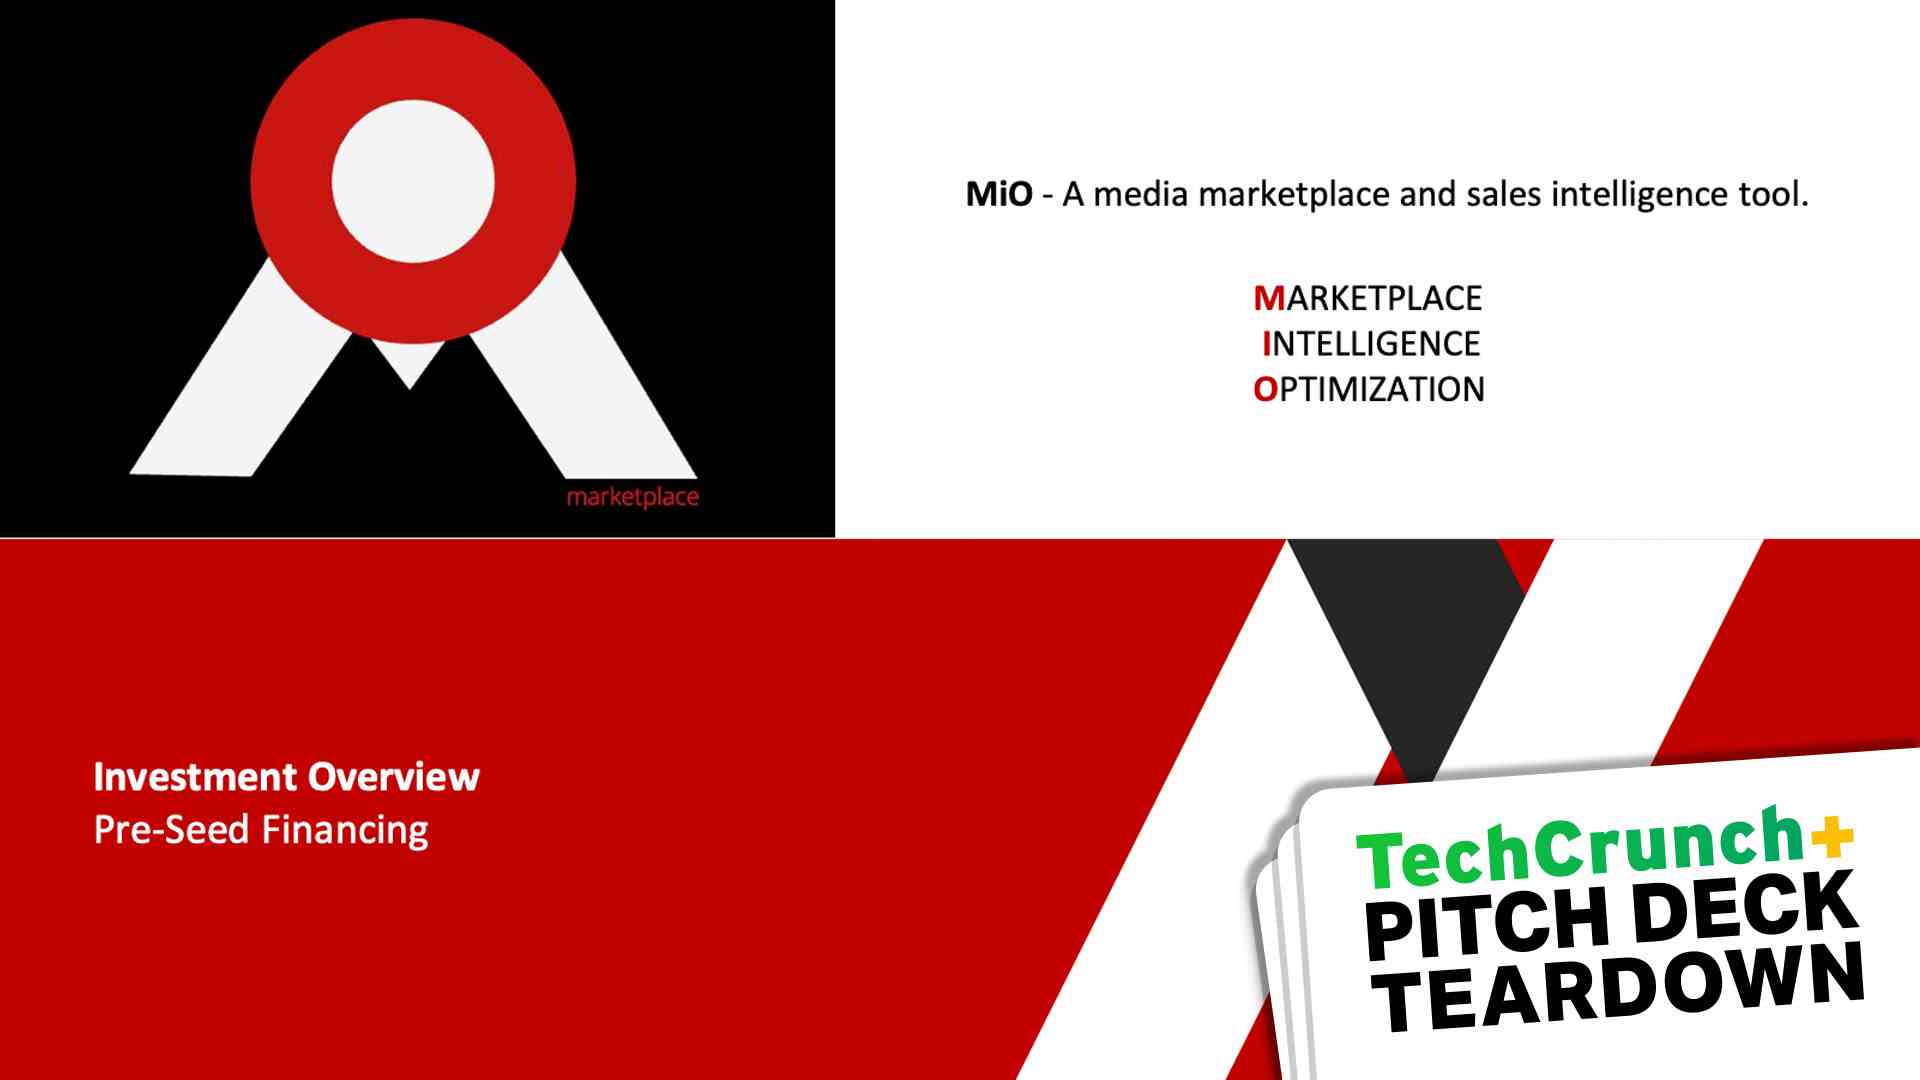 MiO – Ein Media-Marktplatz und Sales-Intelligence-Tool.  OPTIMIERUNG DER MARKTPLATZINTELLIGENZ